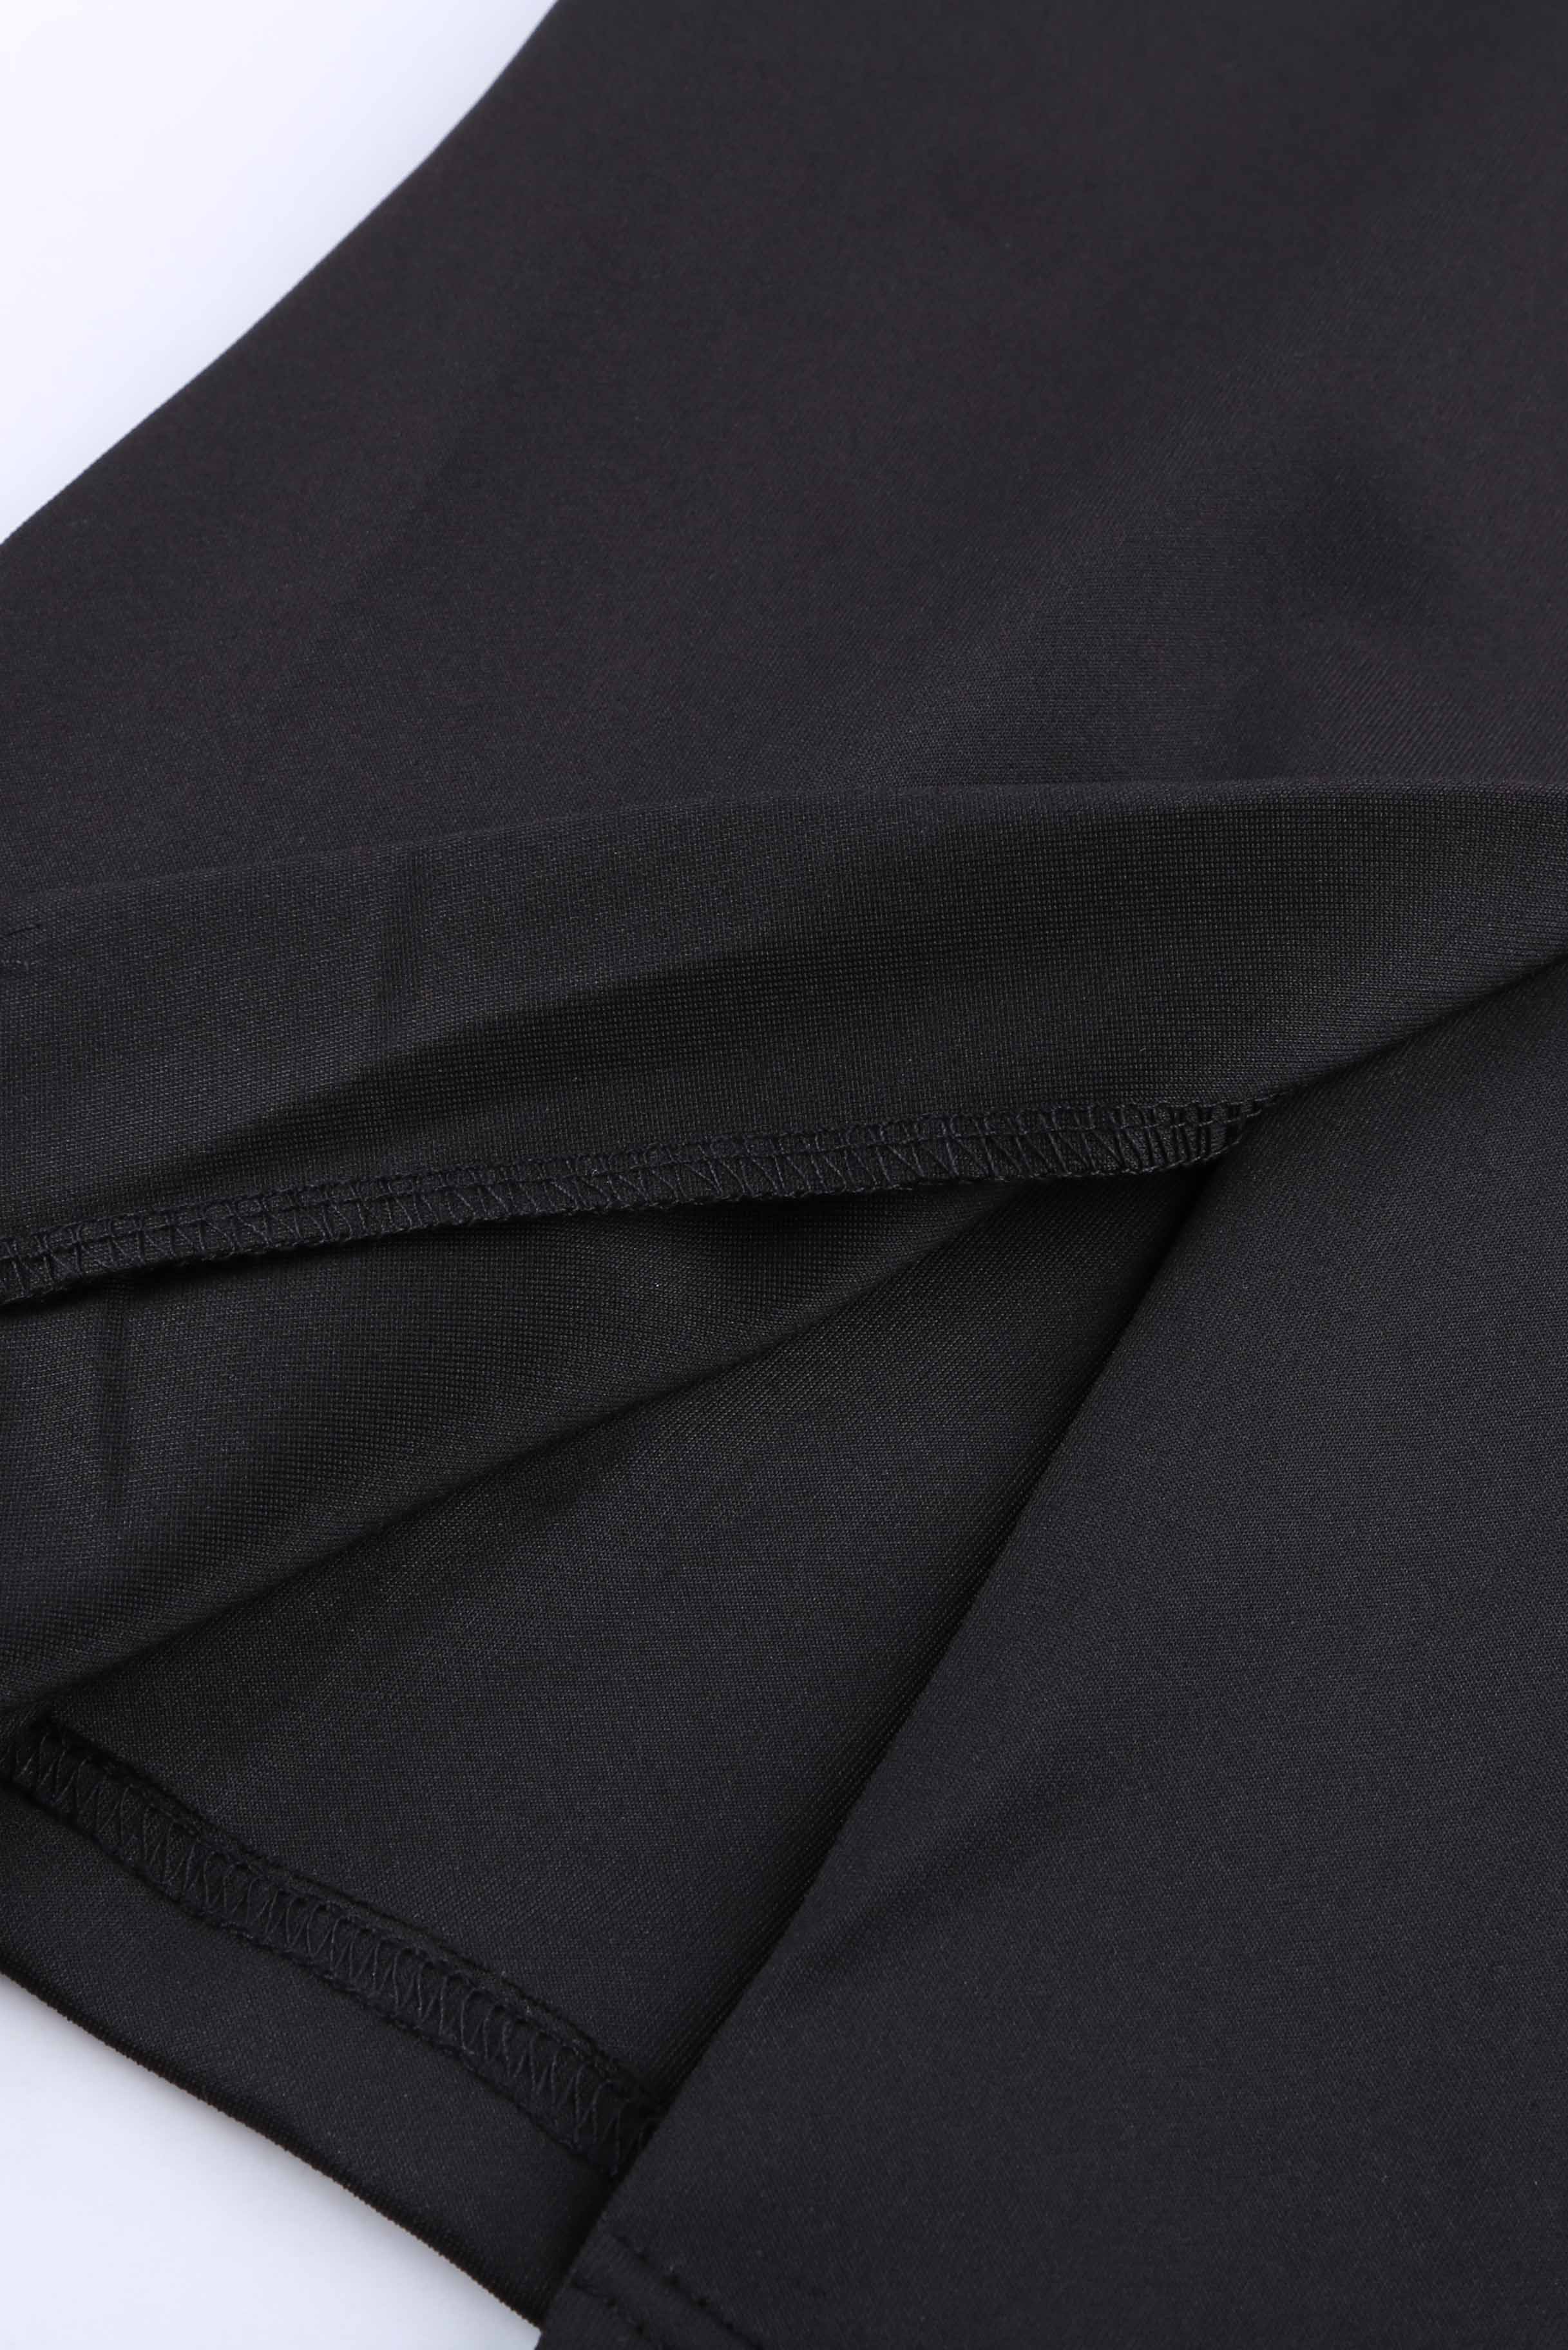 Crna midi haljina s otvorenim ramenima